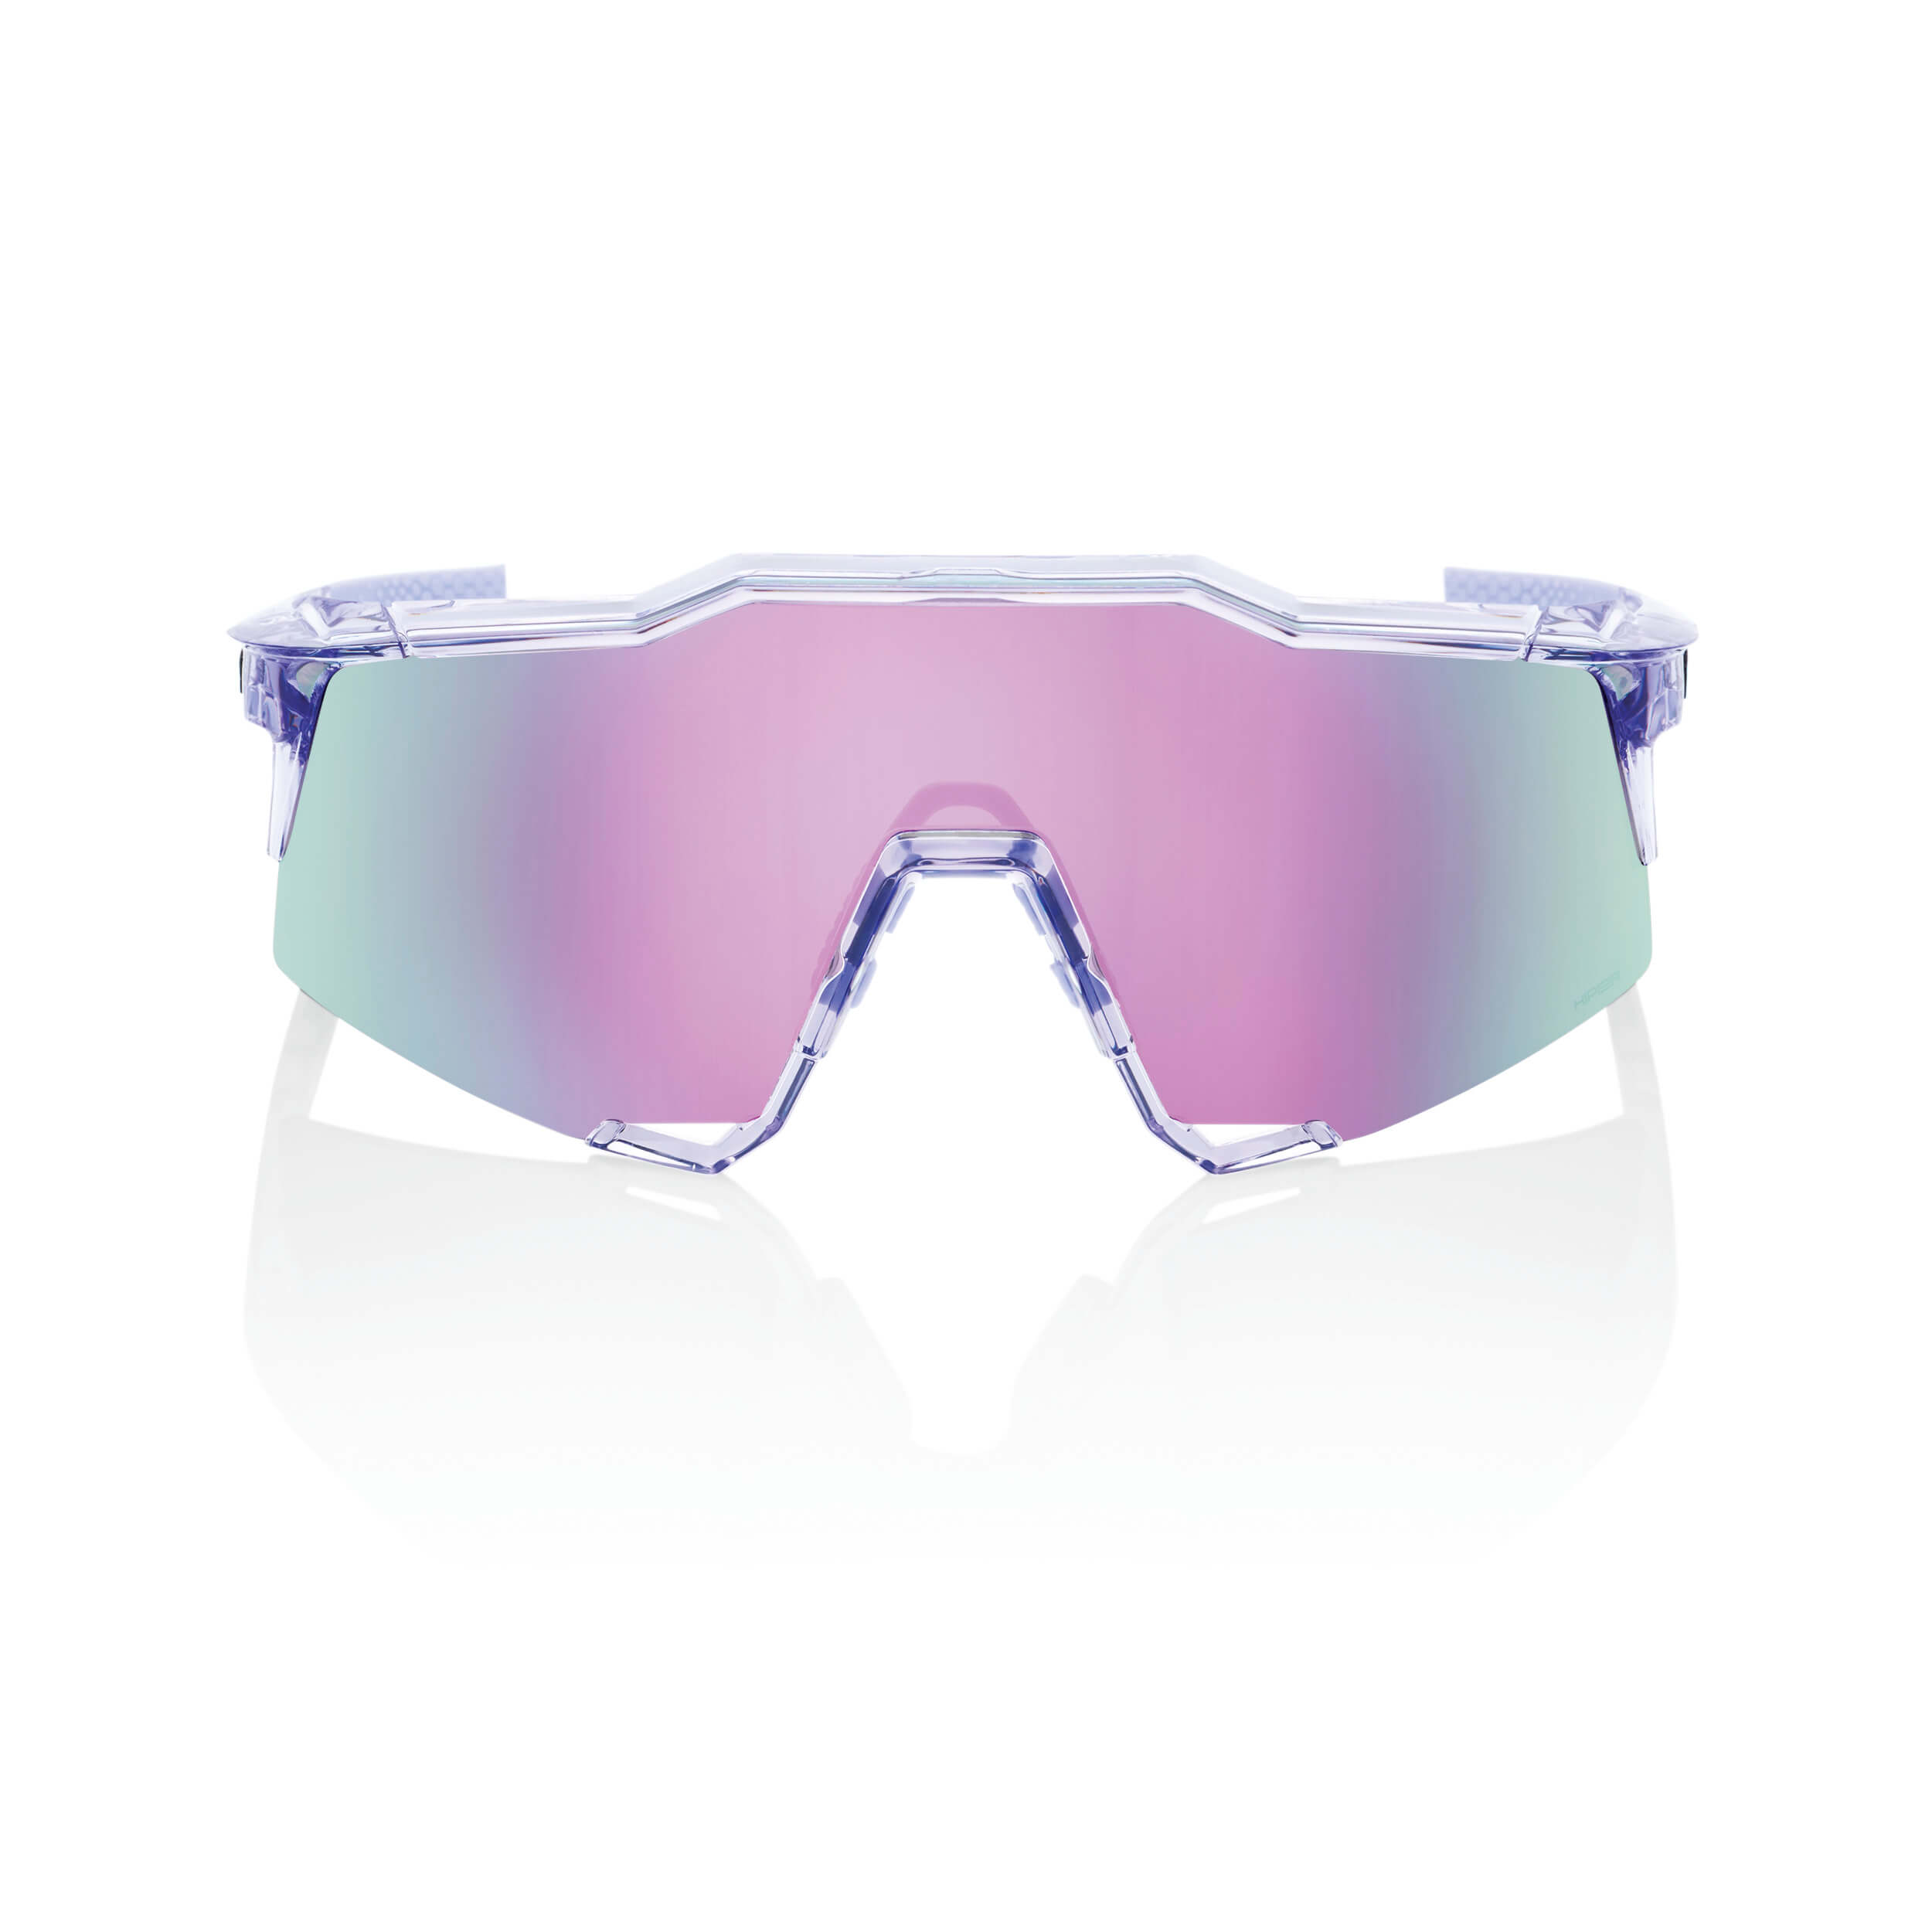 SPEEDCRAFT – Polished Translucent Lavender / HiPER Lavender Mirror Lens